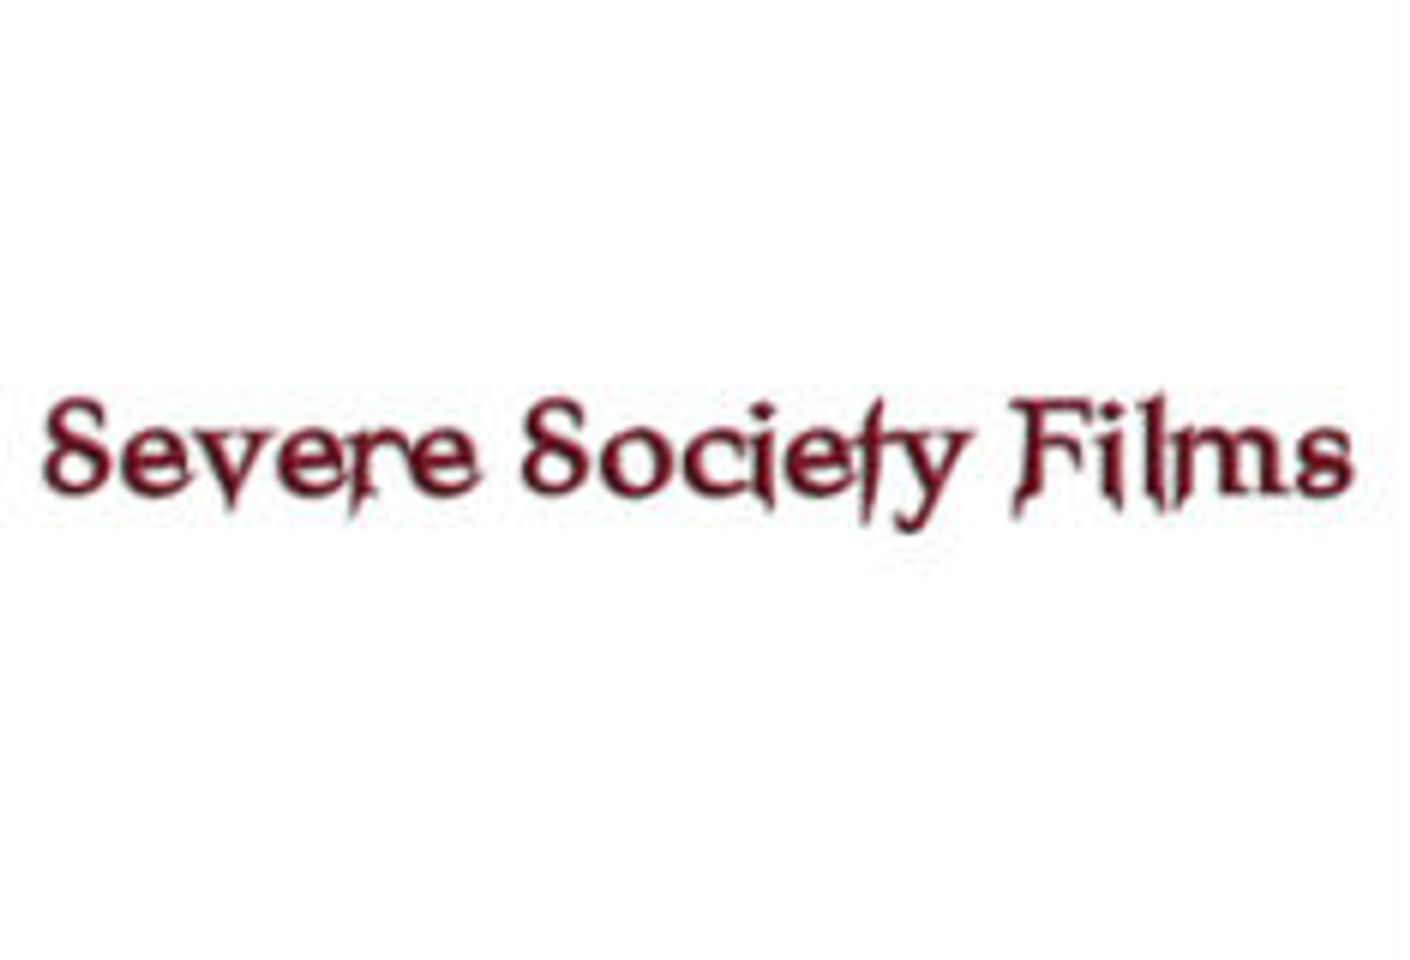 Severe Society Films Garners 2 AVN Award Nominations